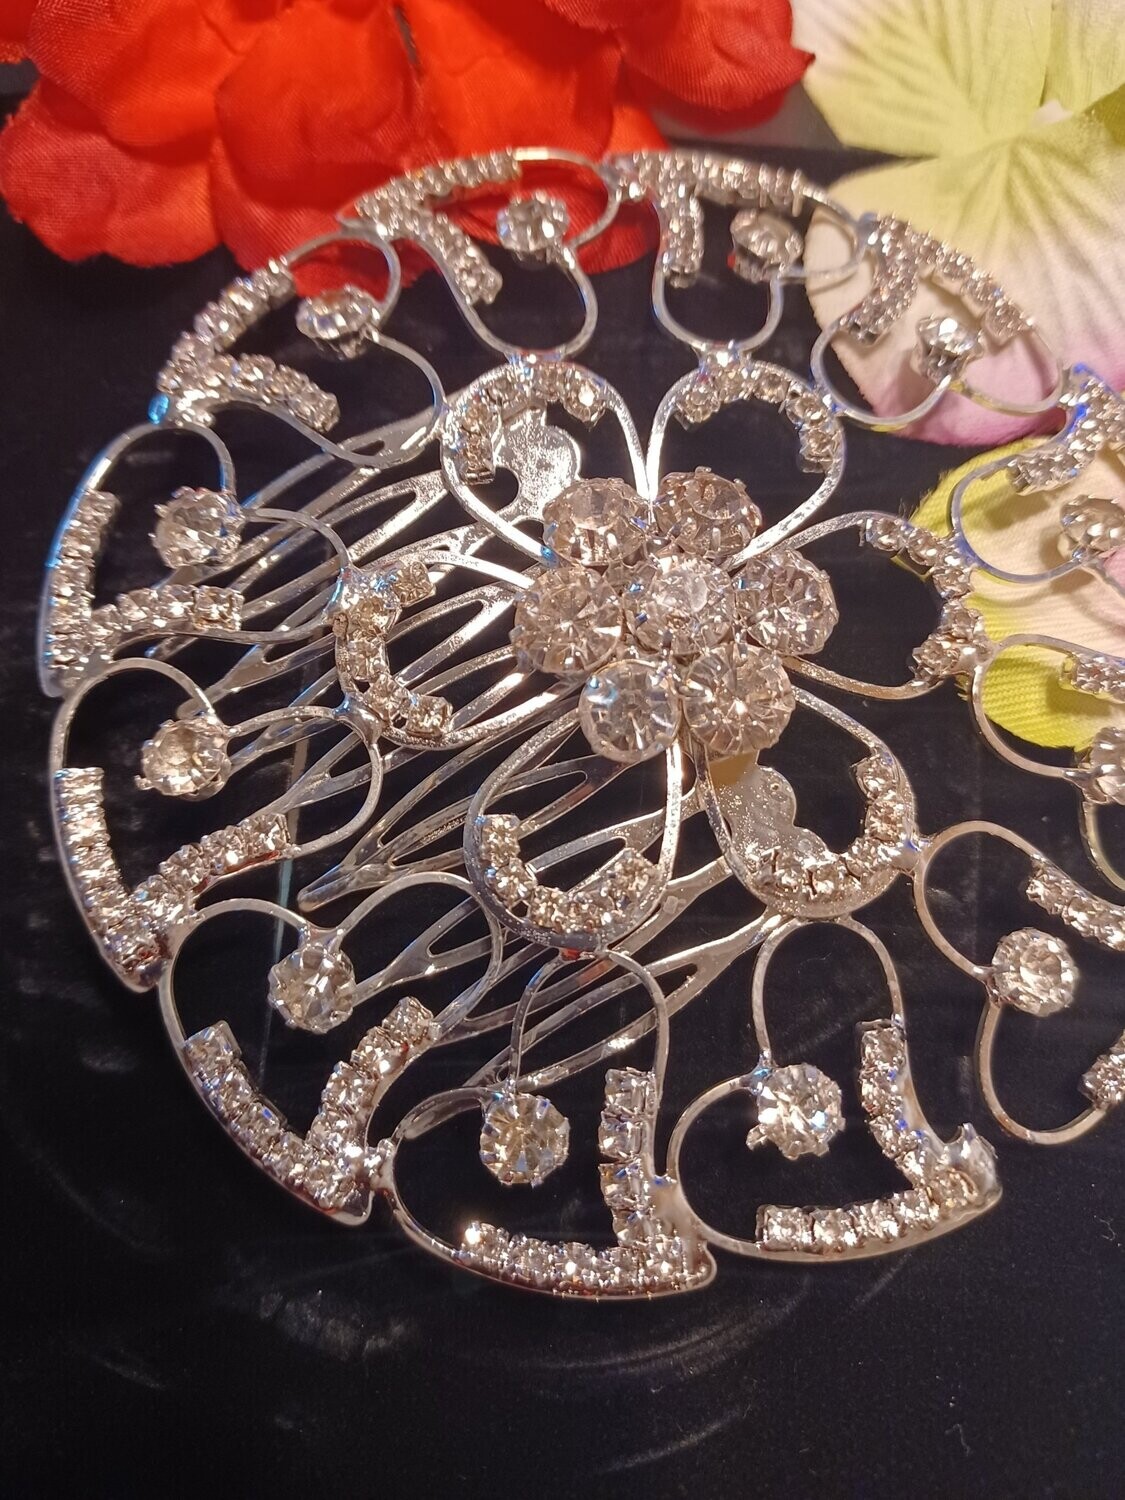 Big Circular designed Rhinestone Crystal Alloy Wedding Decoration Accessory Bridal Hair Combs